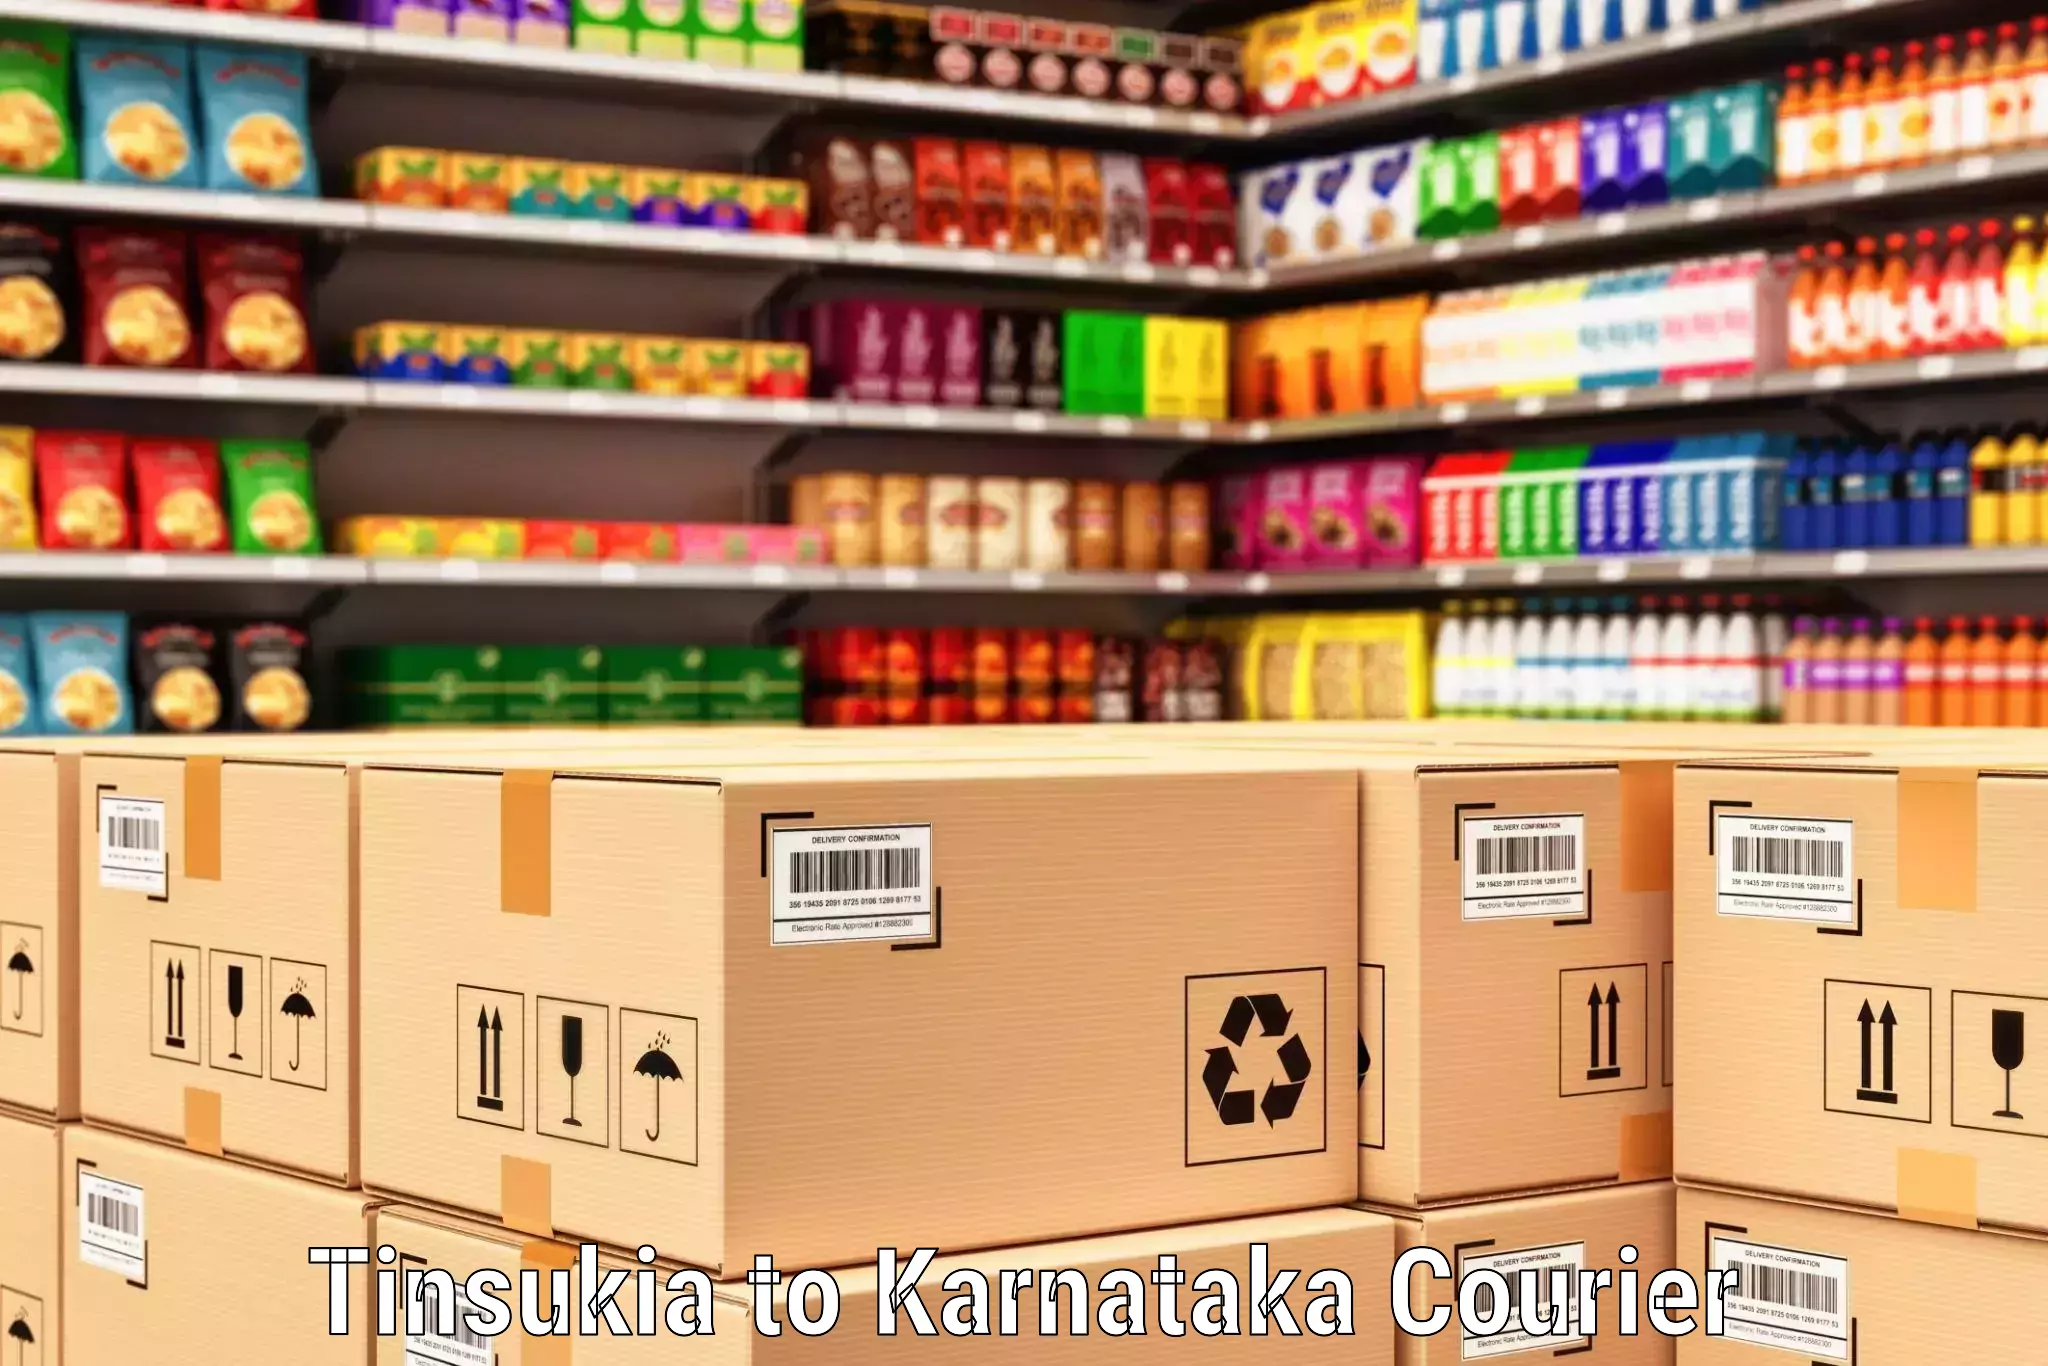 Small parcel delivery Tinsukia to Dakshina Kannada